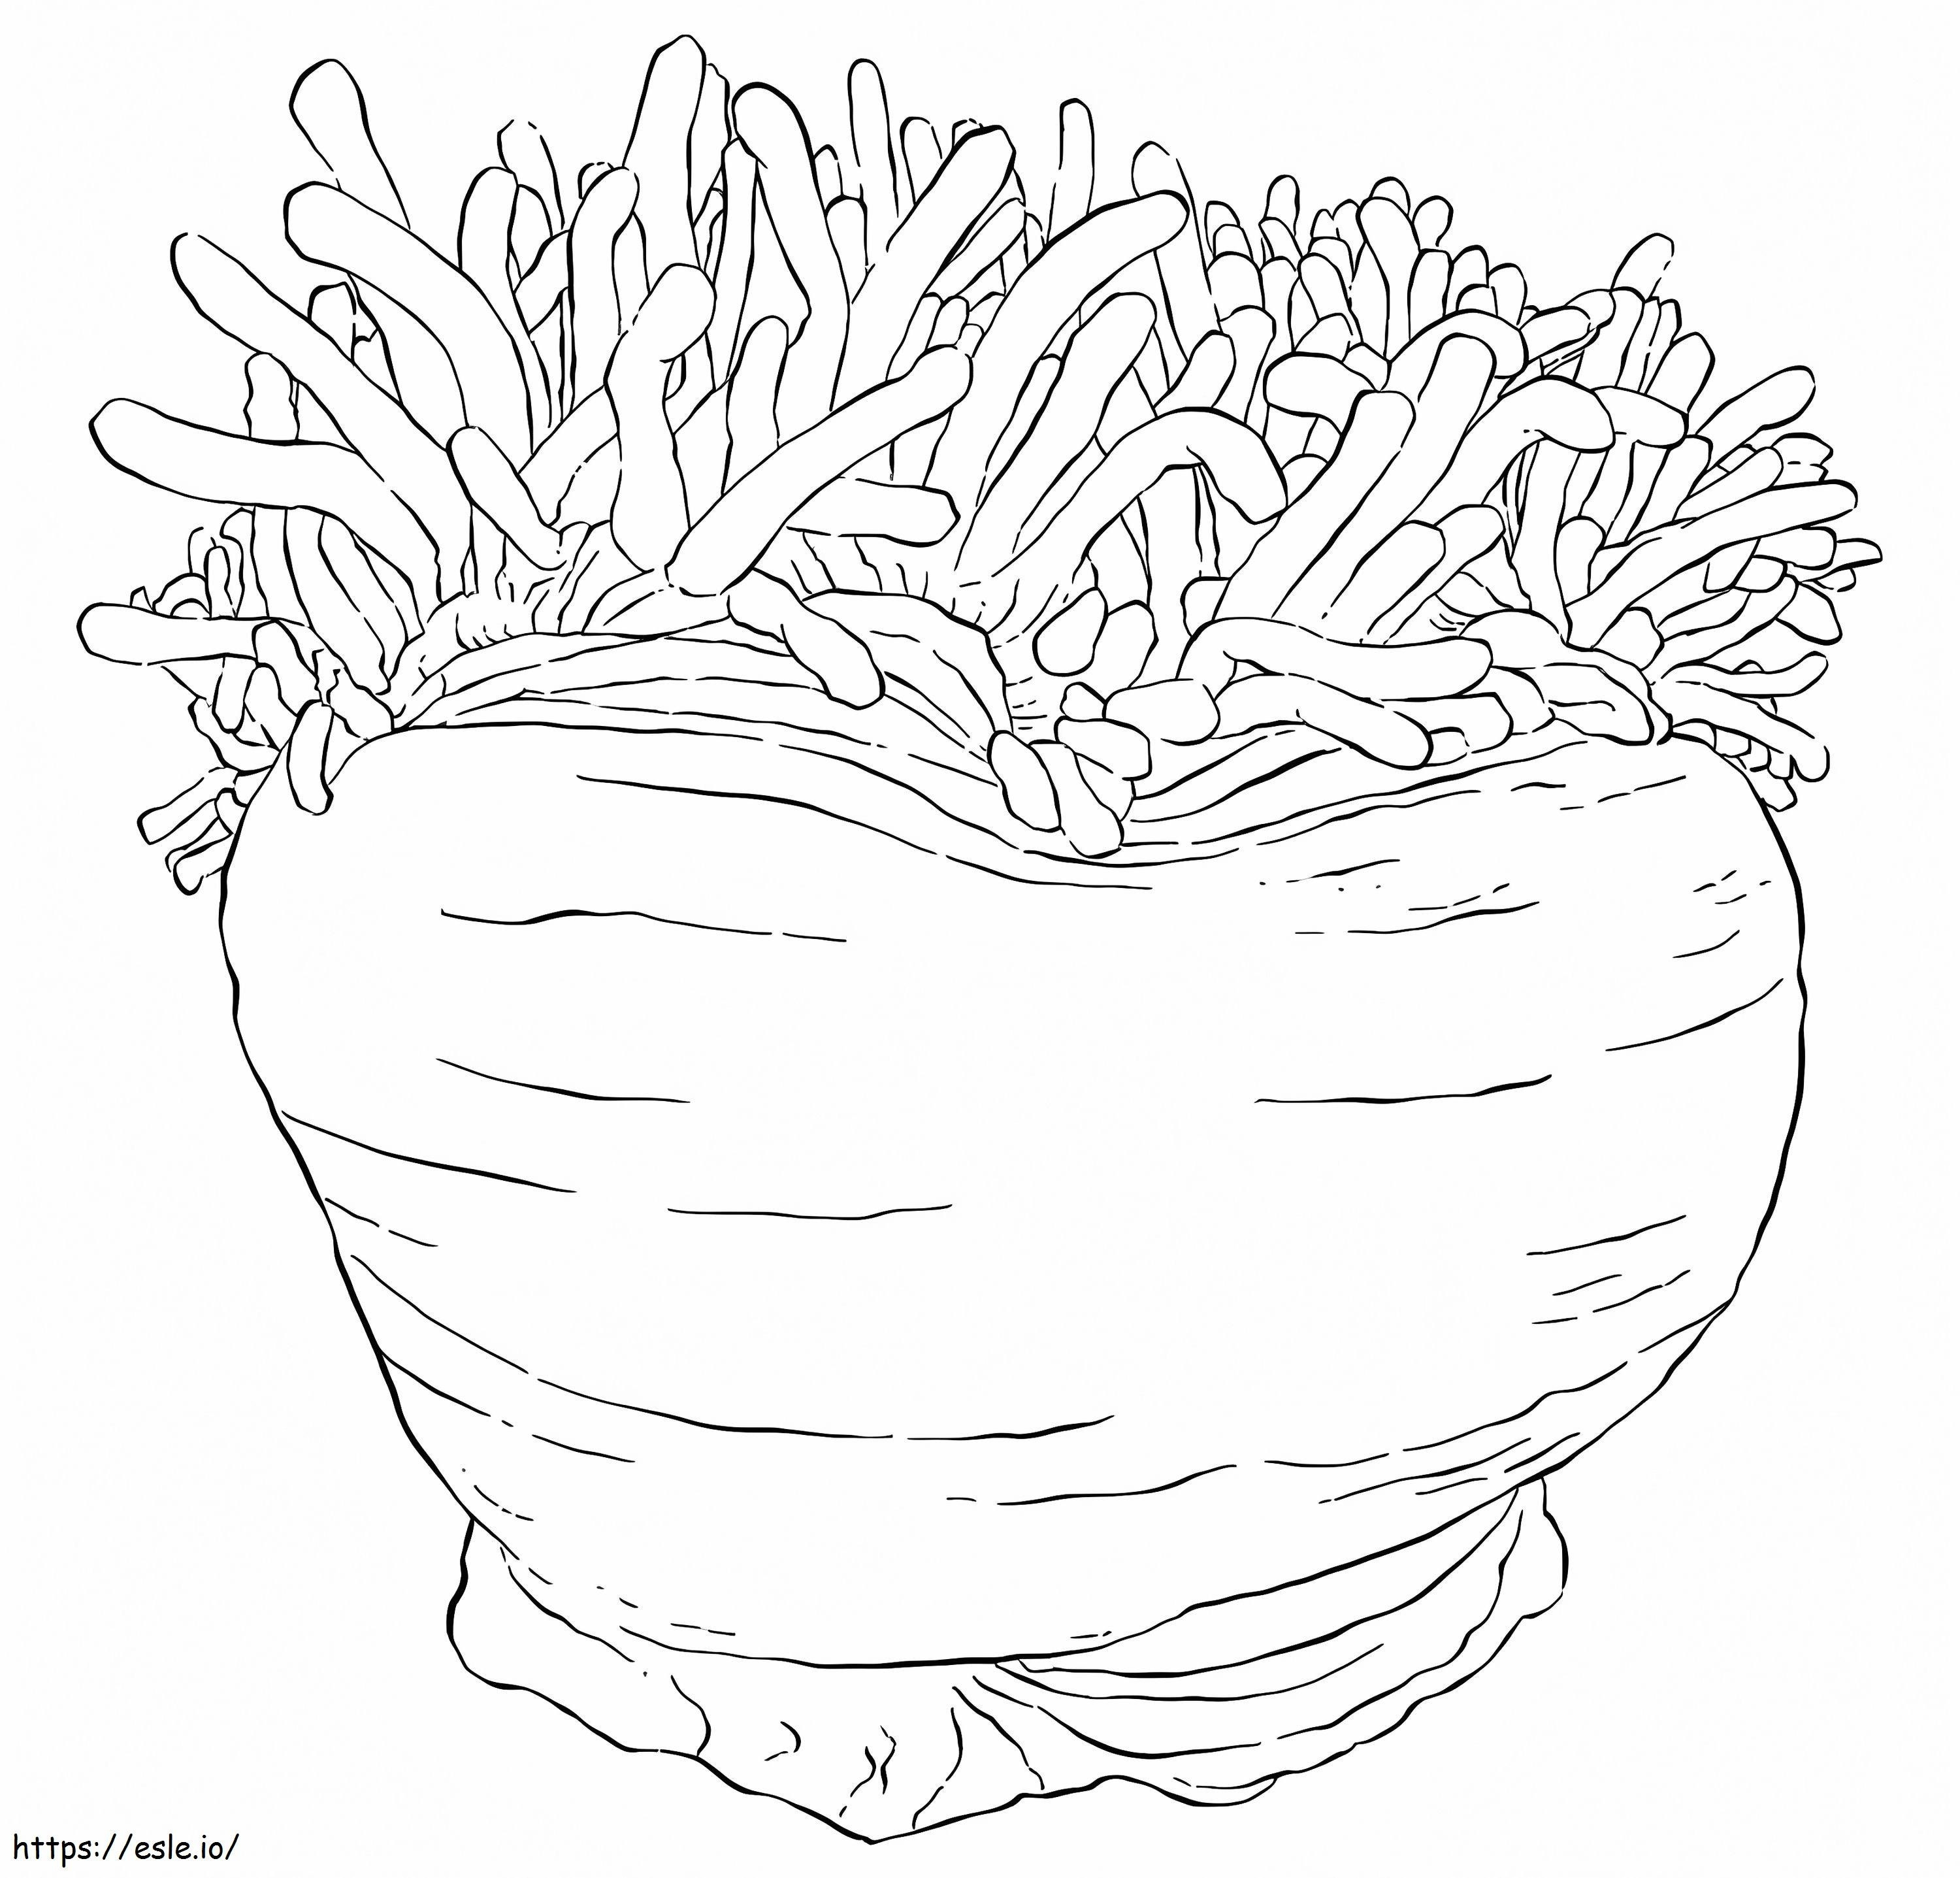 Big Sea Anemone coloring page